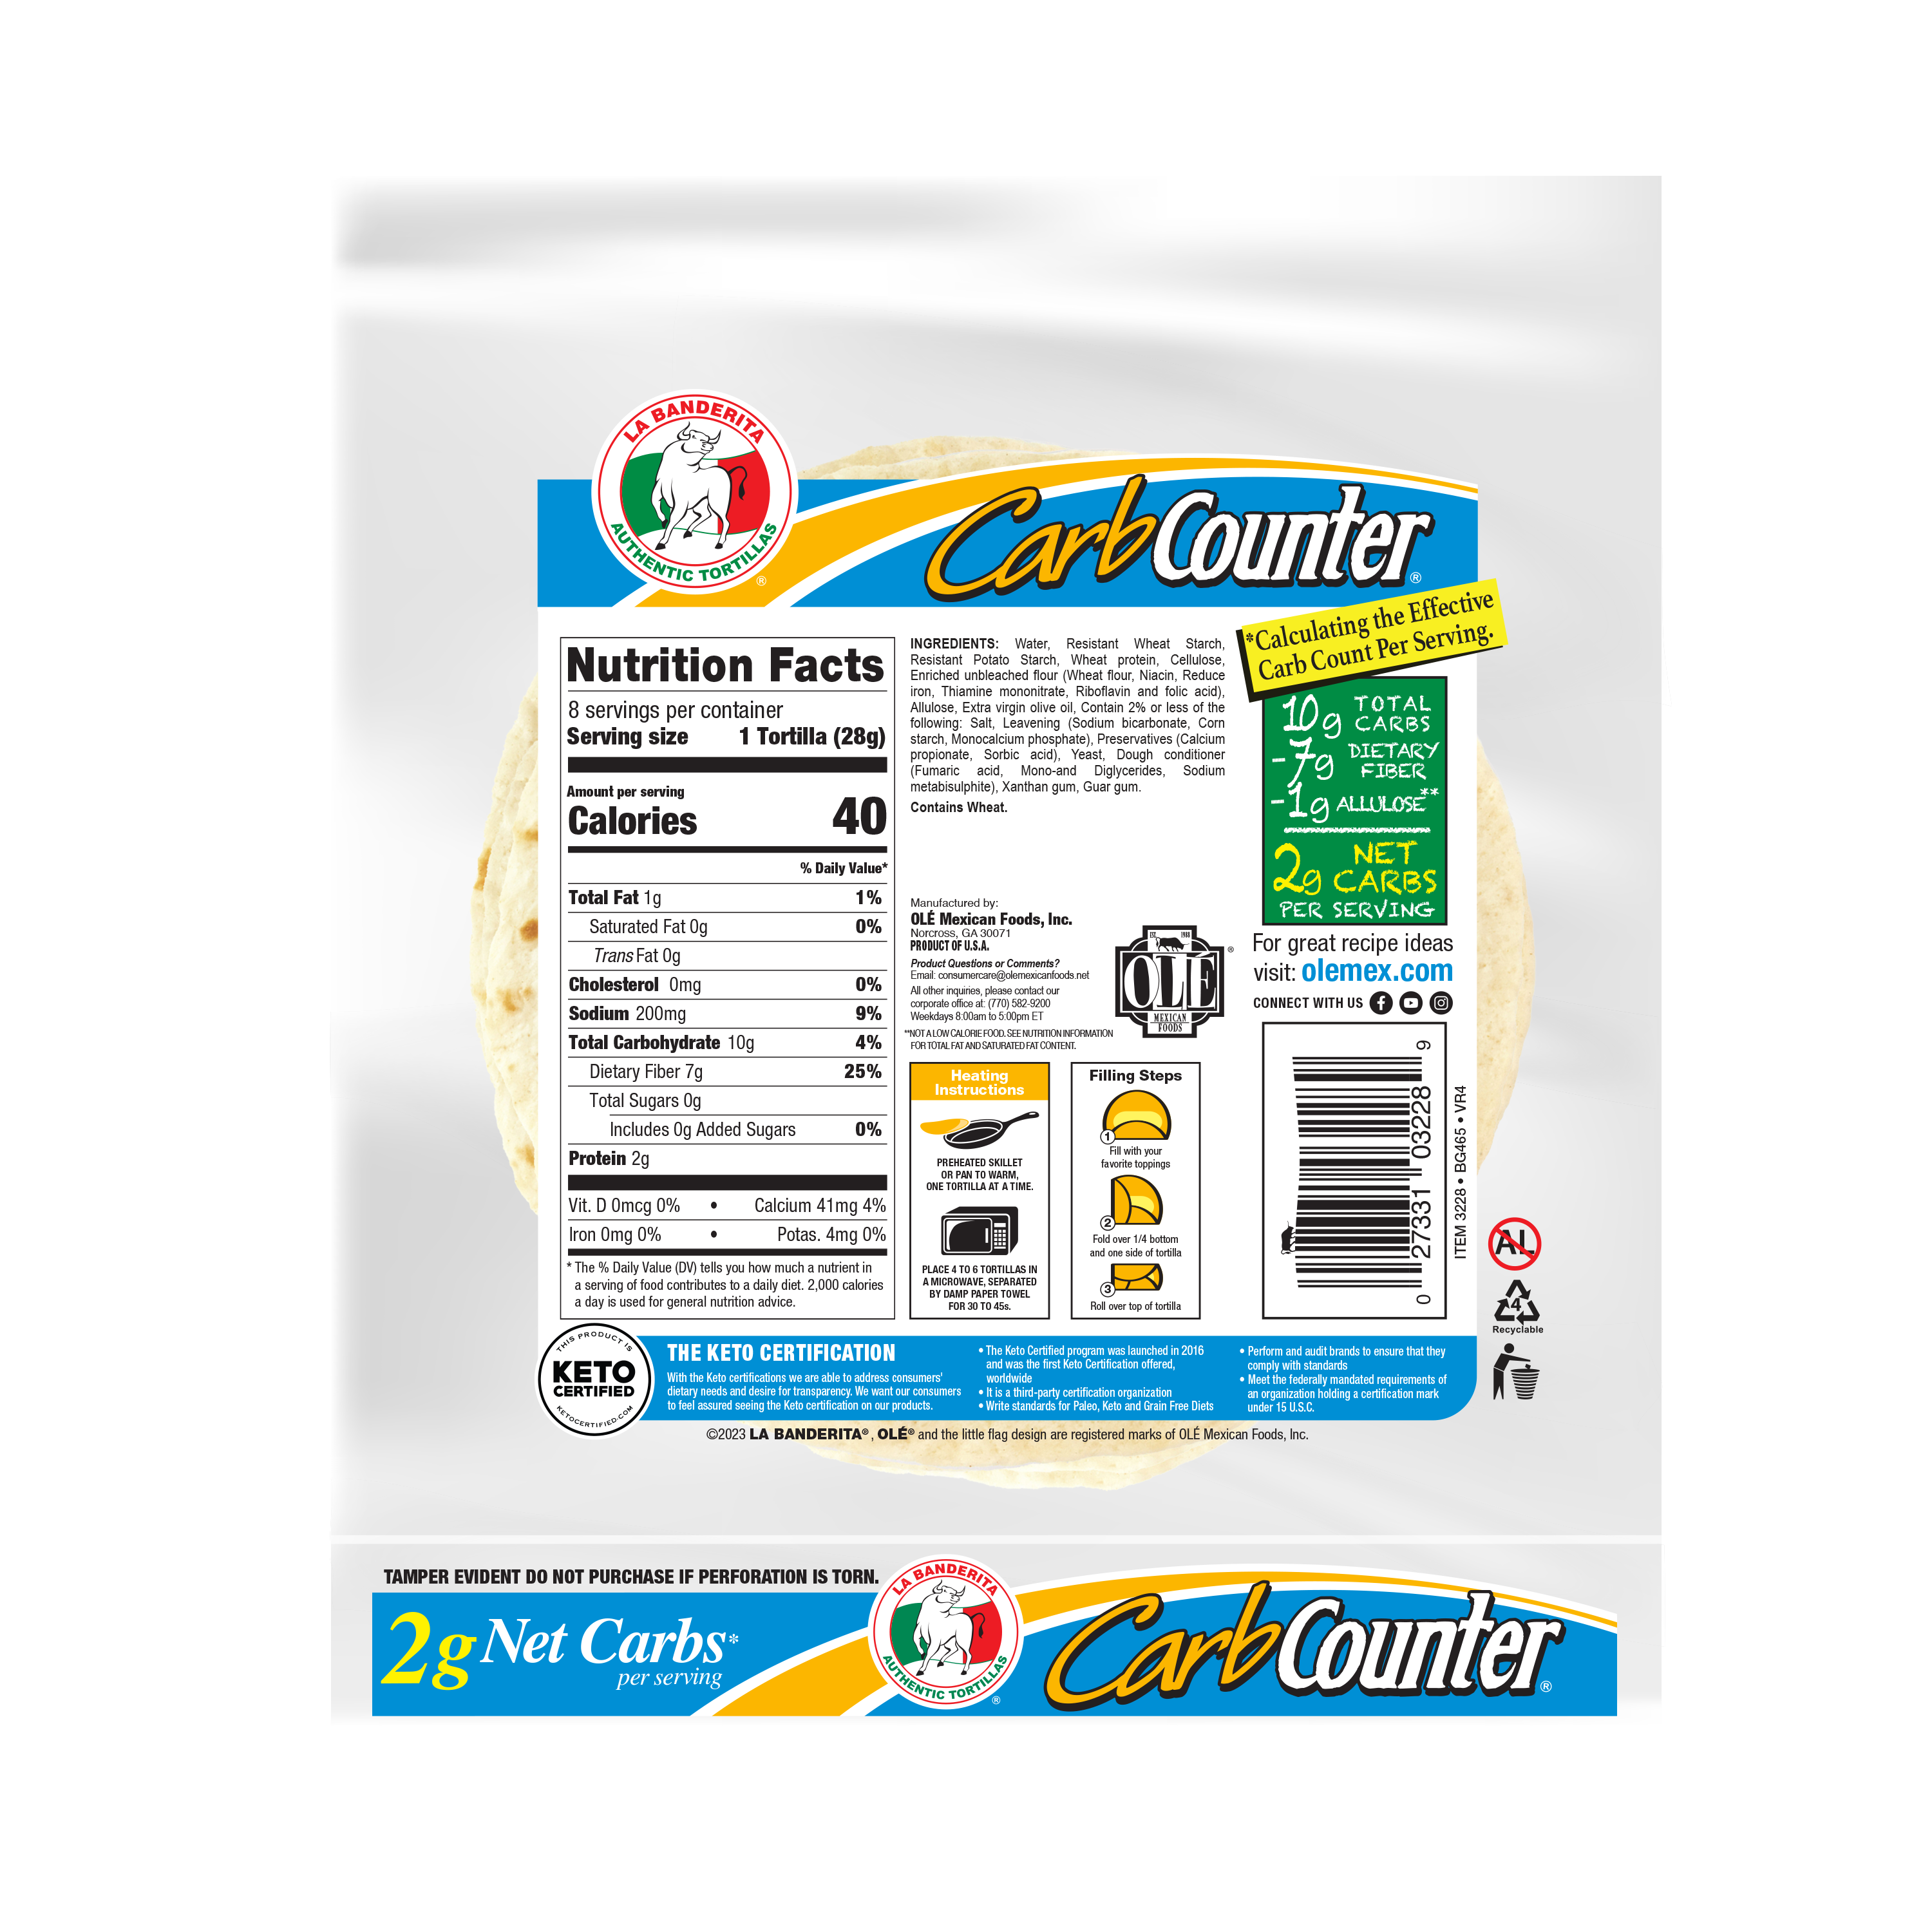 La Banderita Carb Counter Snack Size Flour Tortillas 8 Count Bag - image 2 of 9